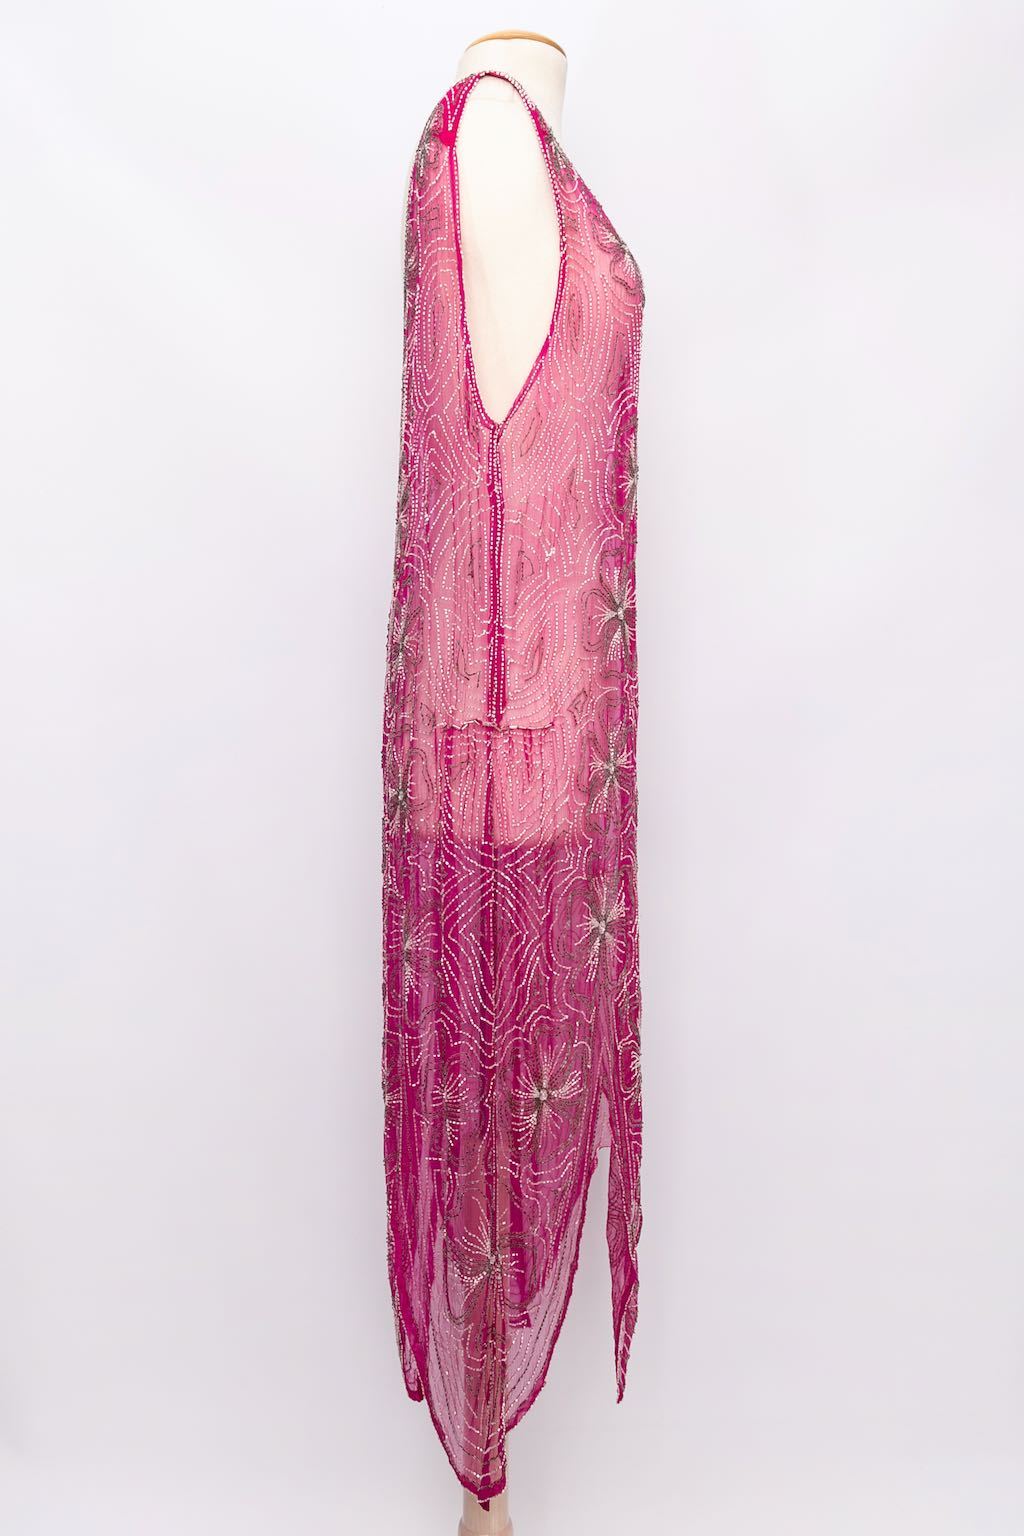 Robe perlée en mousseline de soie rose 1930s